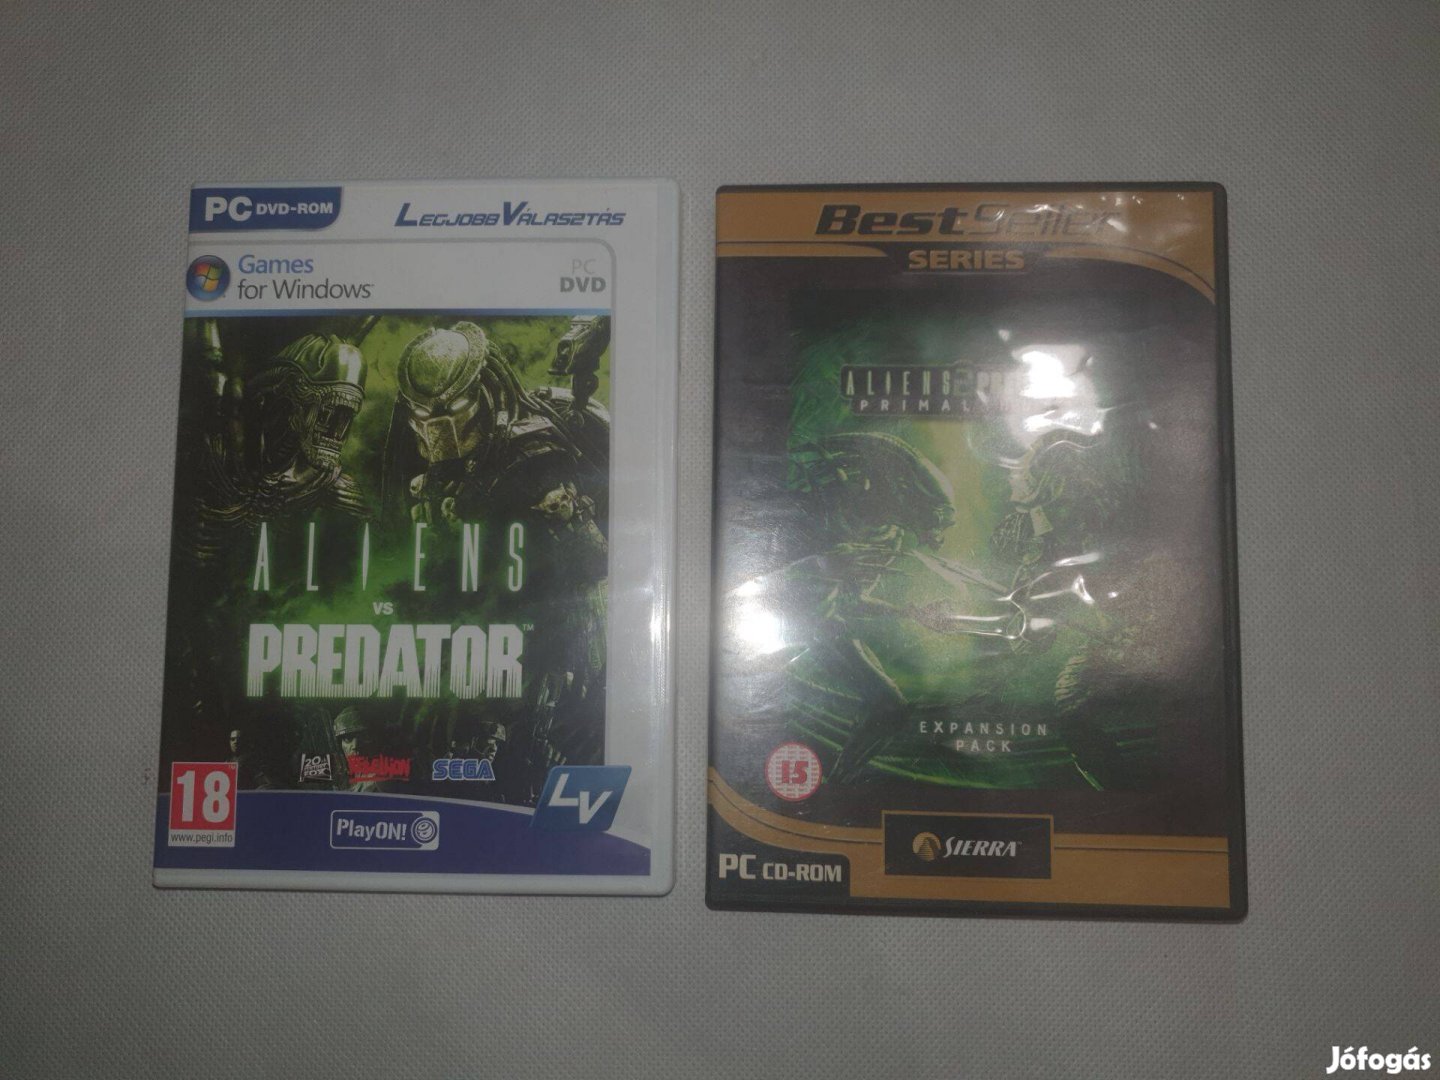 Aliens vs. Predator 1 és 2 része PC Játék